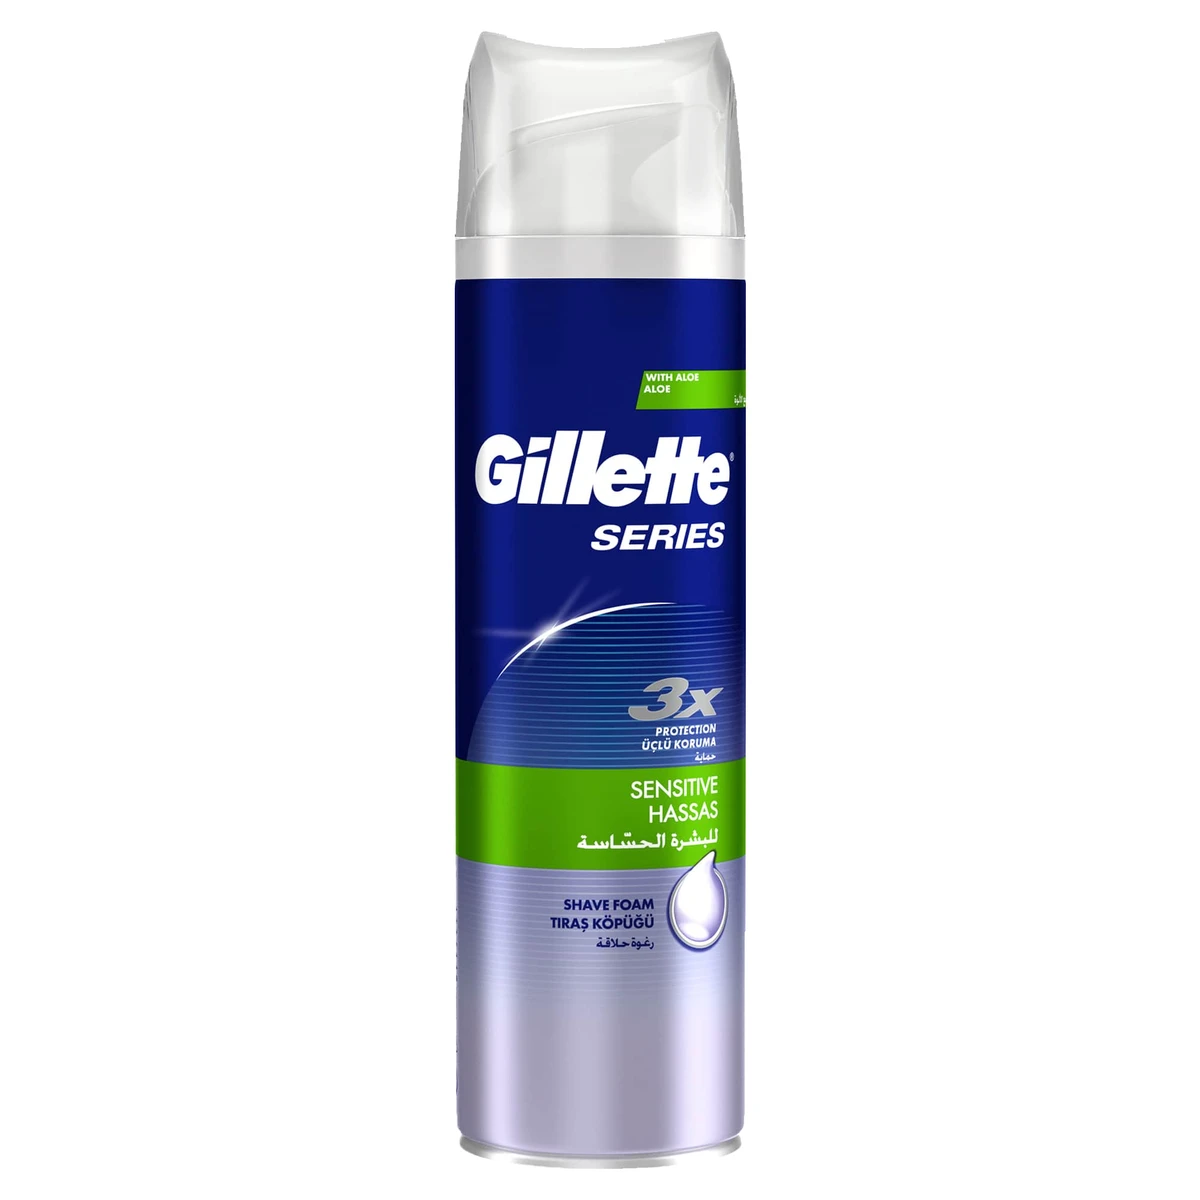 Gillette Mach3 borotvahab érzékeny bőrre, 250 ml